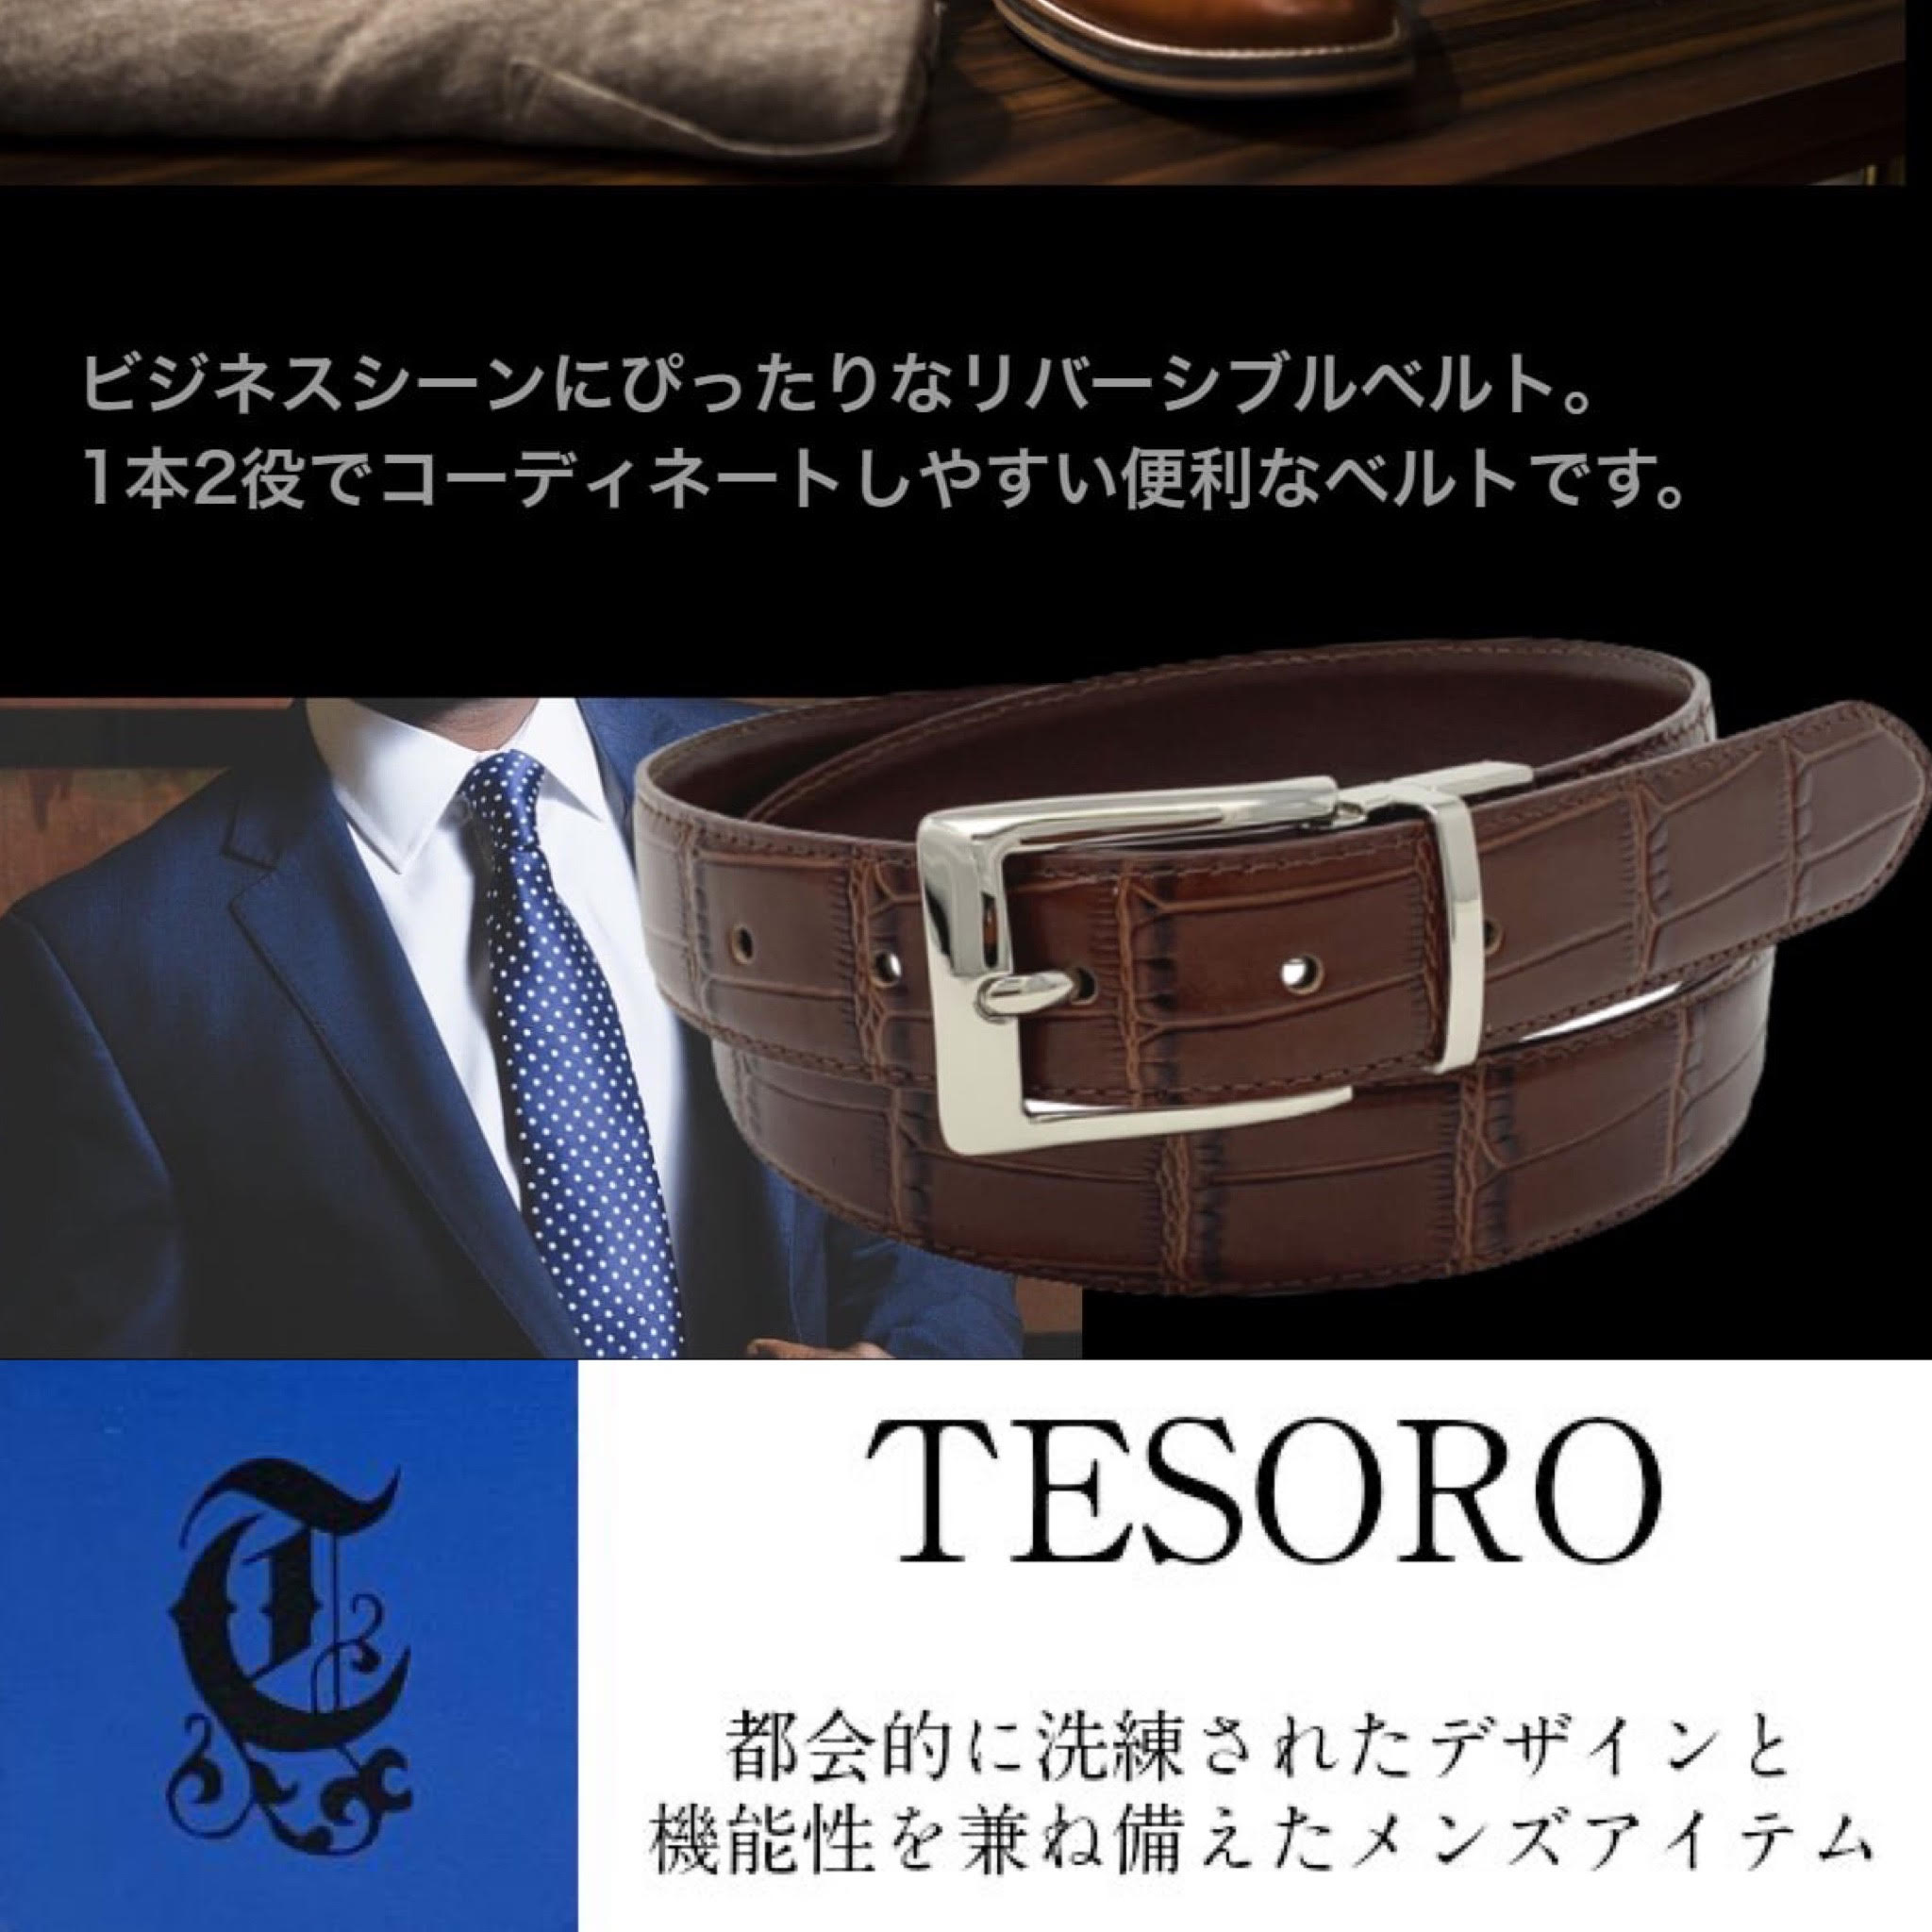 『TESORO』はイタリア語で『宝』 気品のあるメンズベルトをリリースしました。